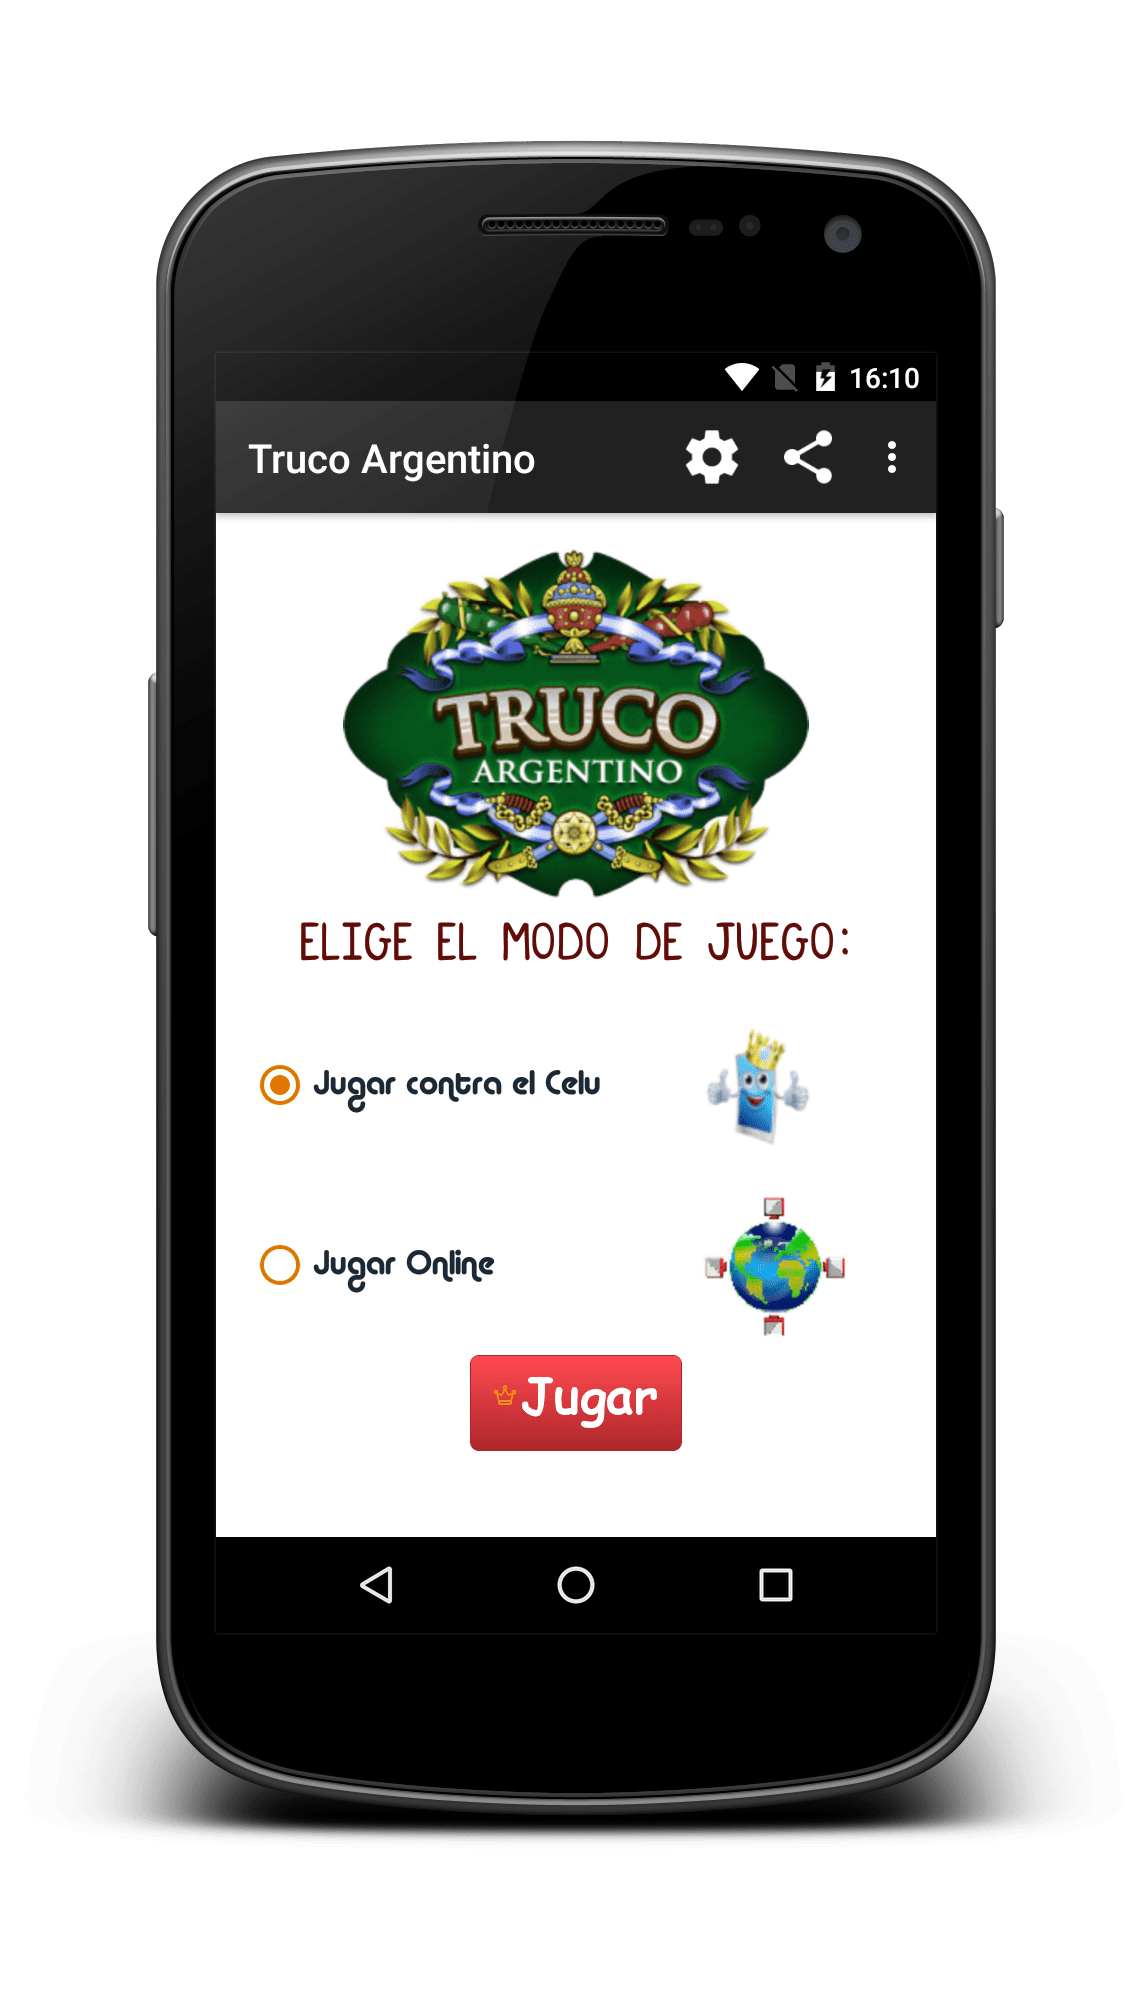 Truco argentino - Online - Offline